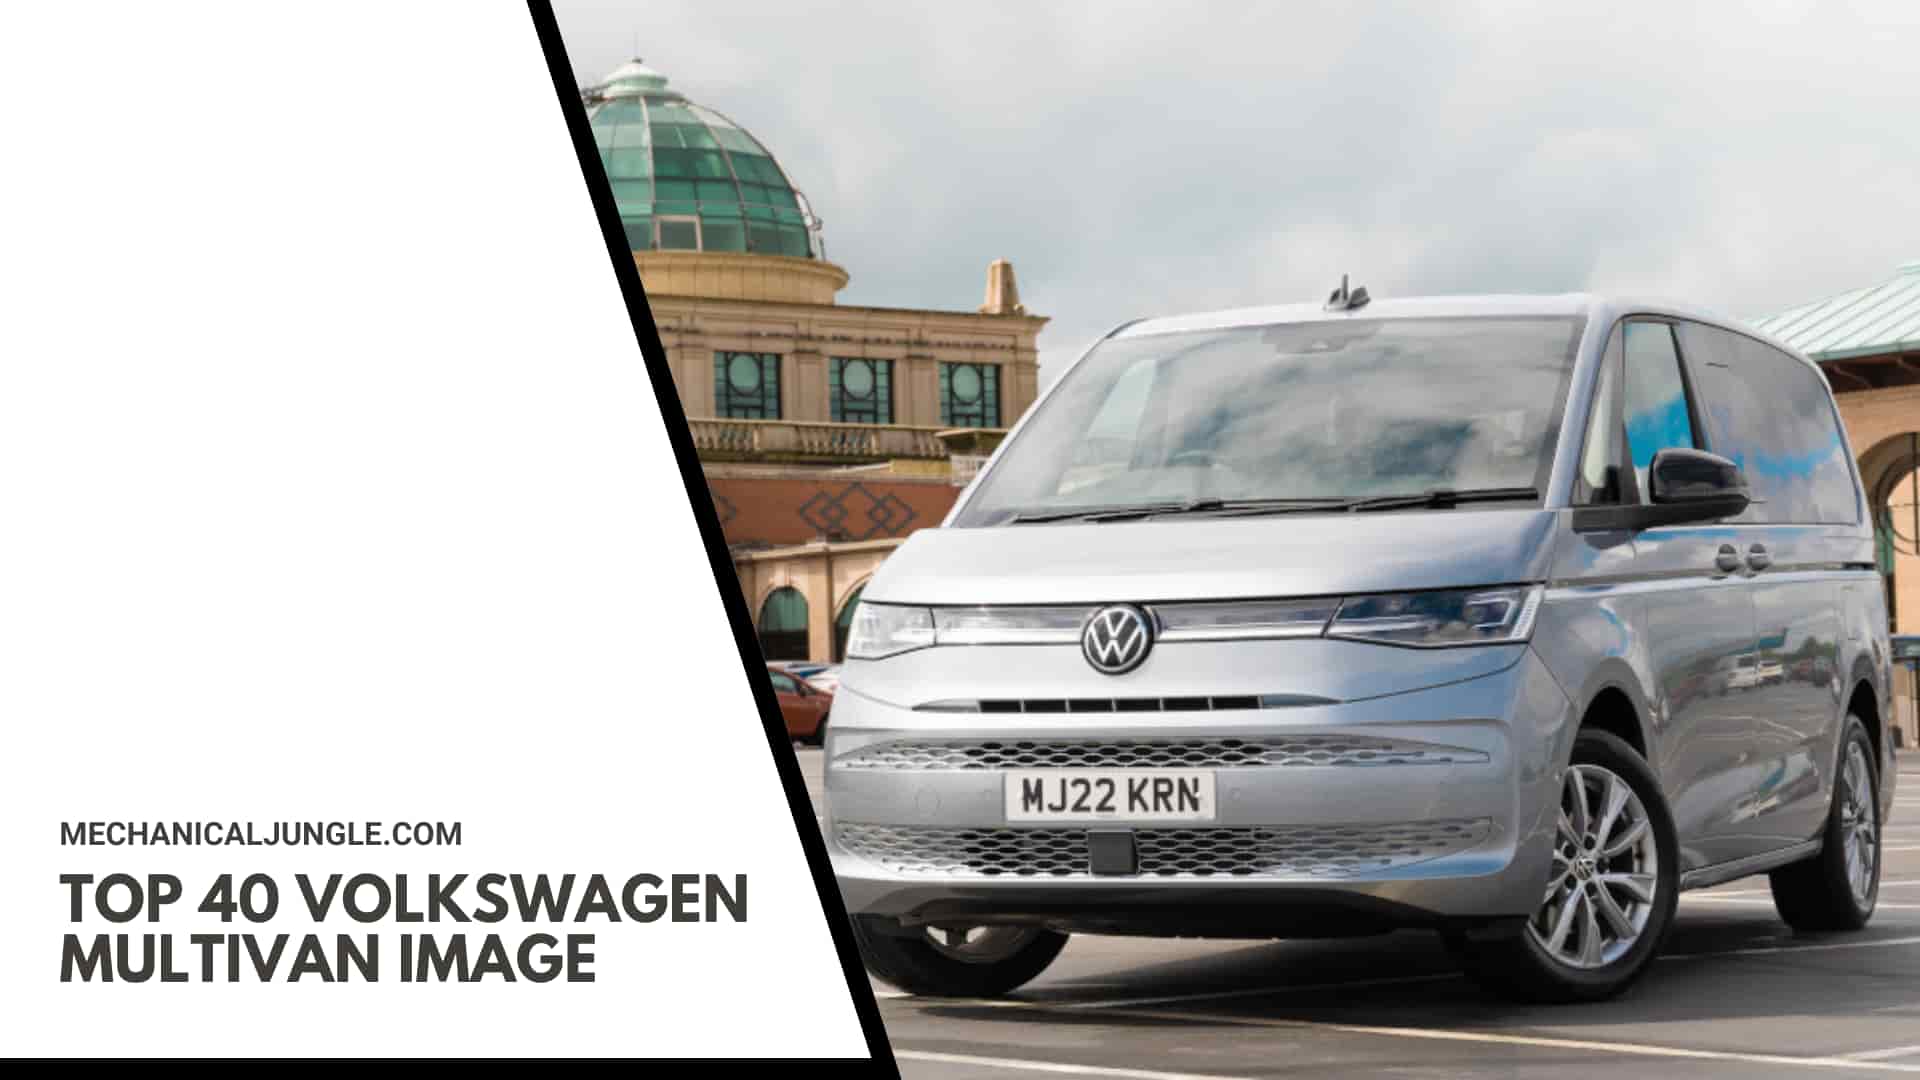 Top 40 Volkswagen Multivan Image